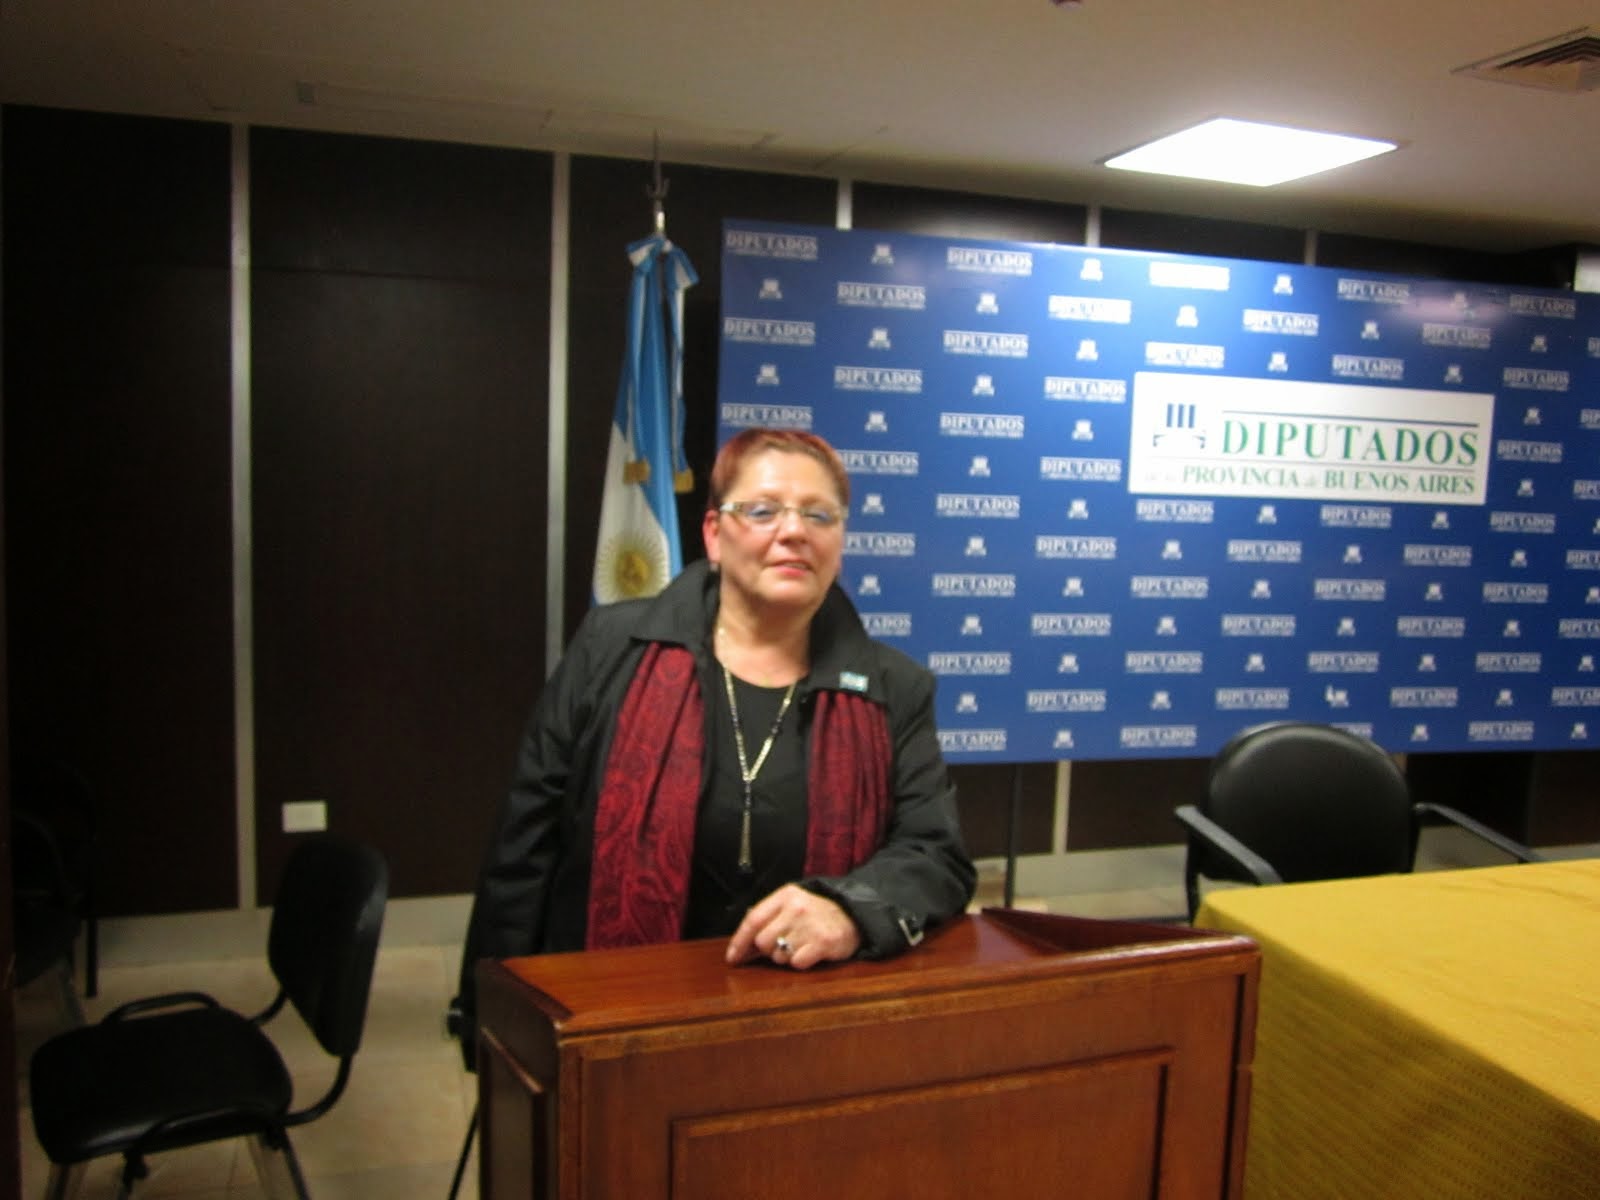 Mirta Praino-Honorable Camara de Diputados de la Provincia de Buenos Aires